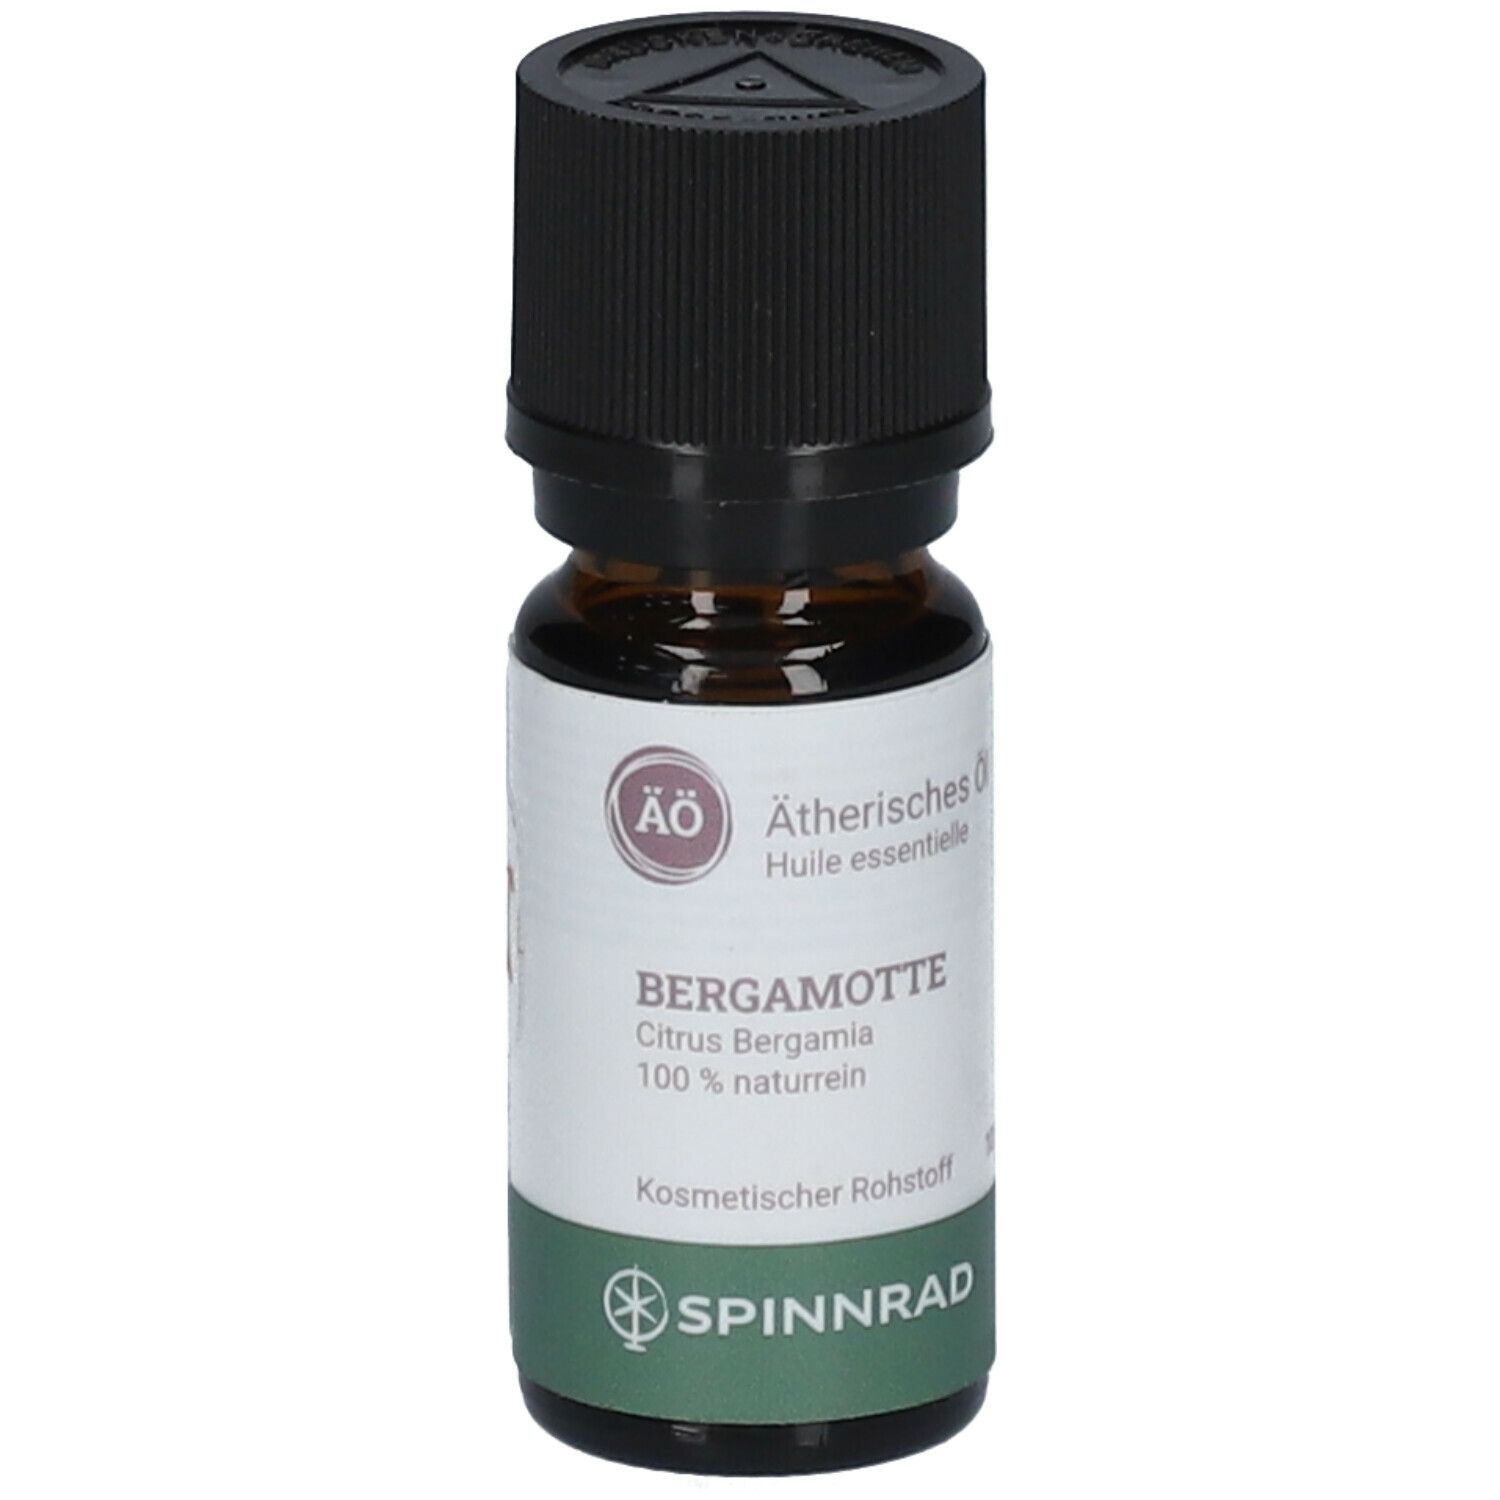 Spinnrad® Etherisches Öl Bergamotte 100 % naturrein